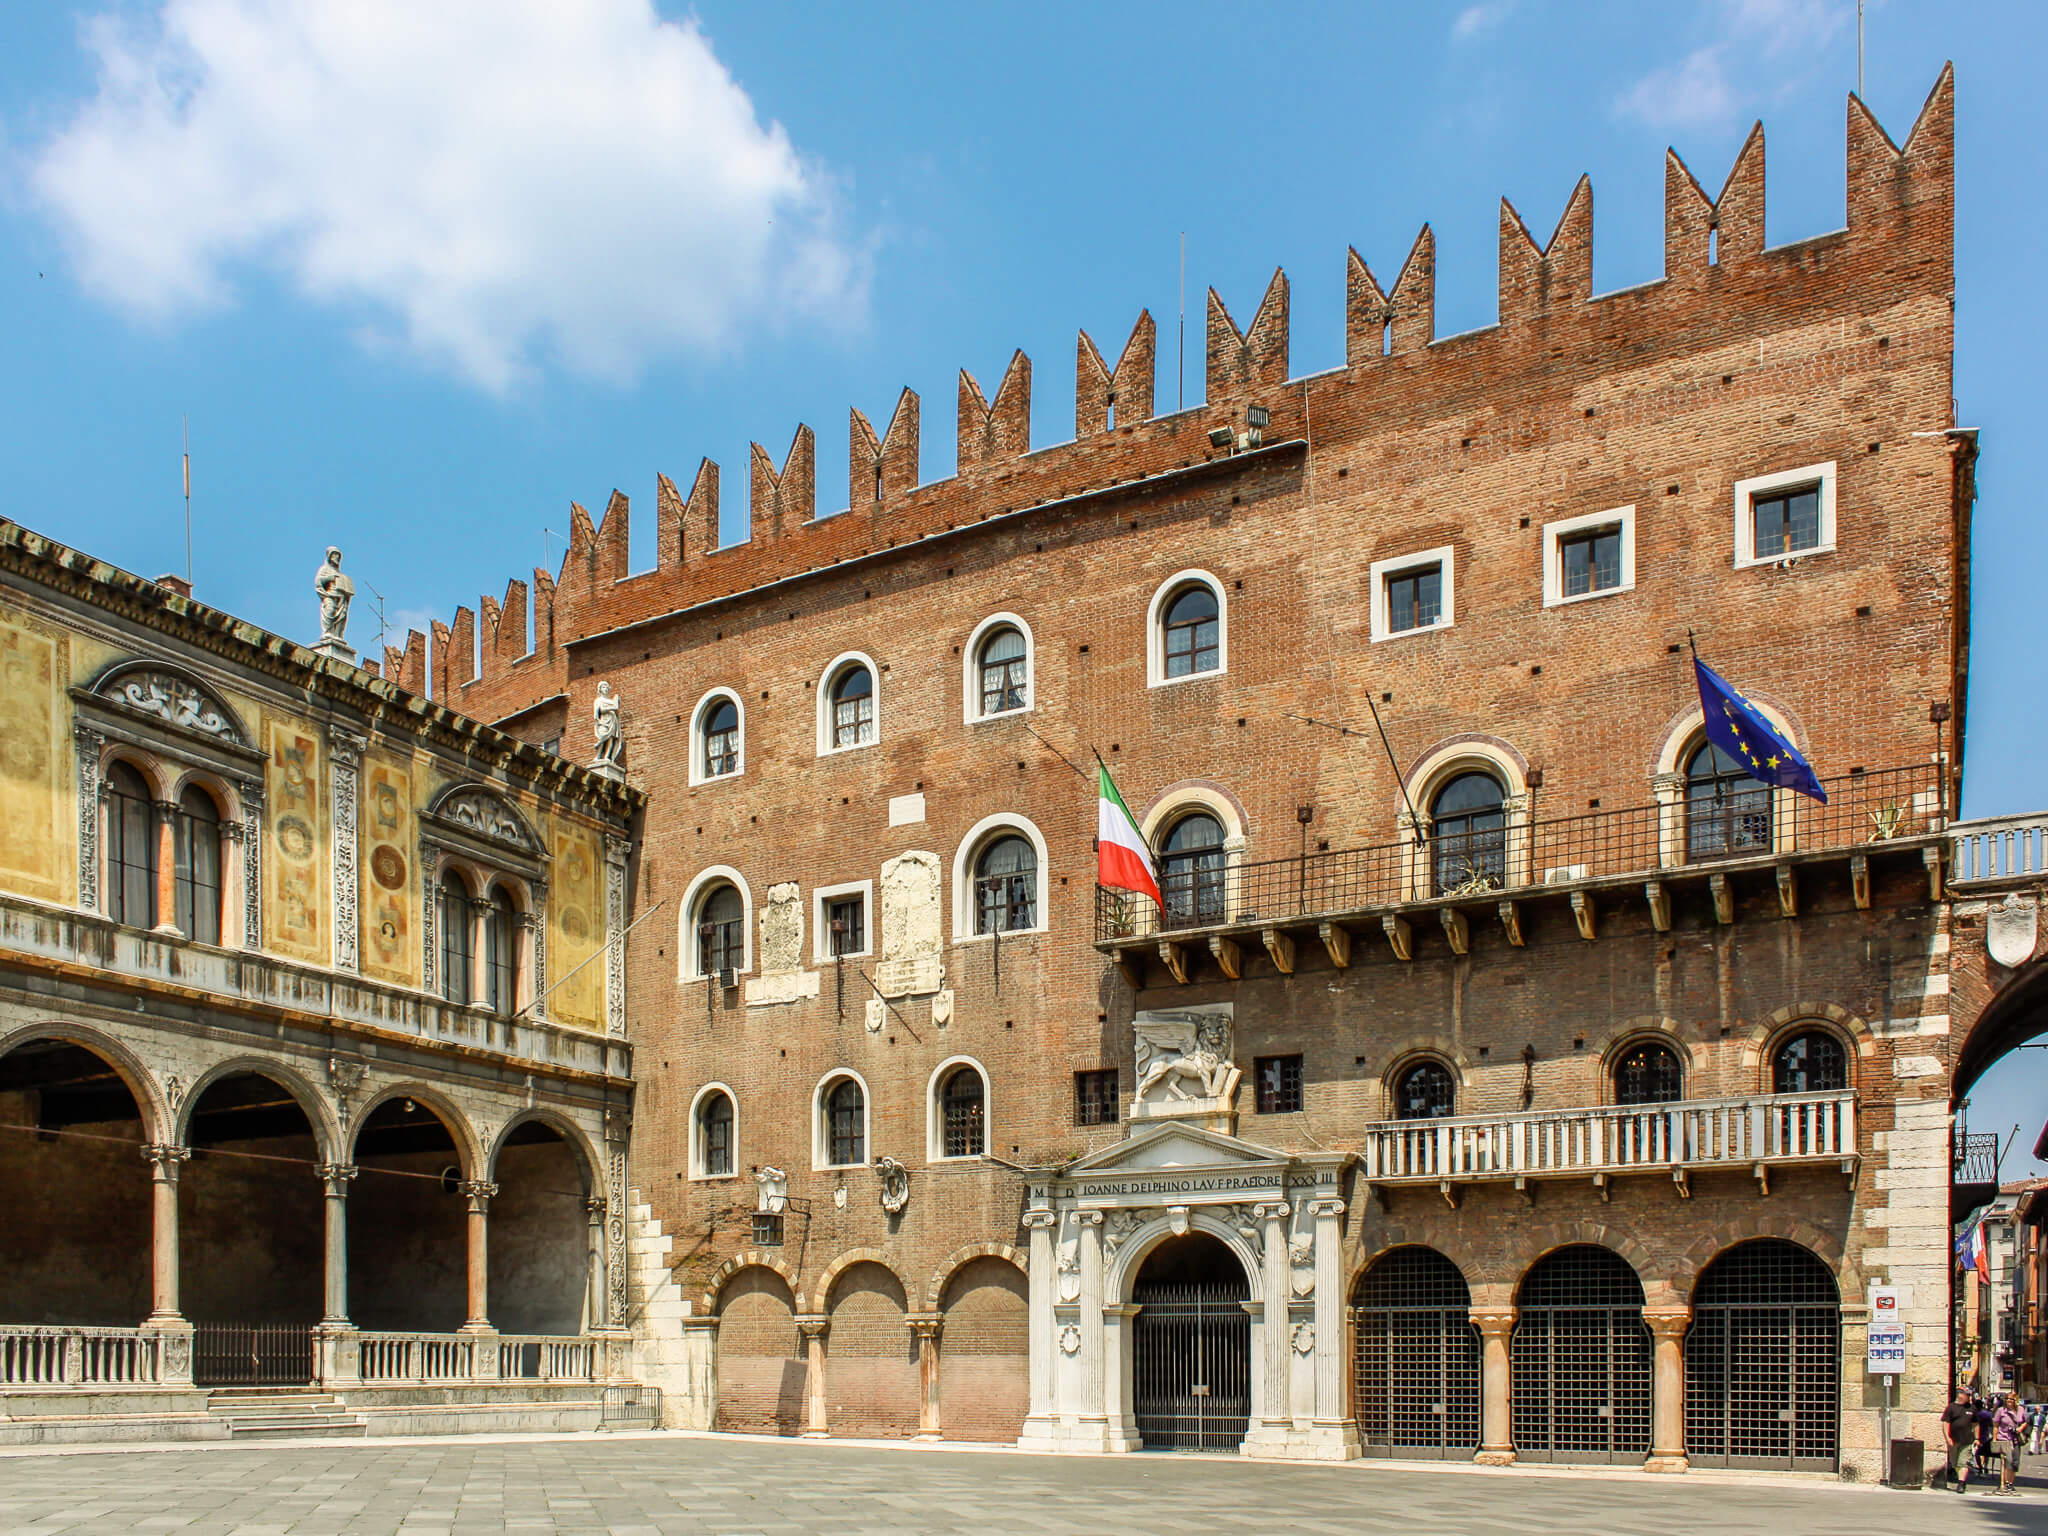 The Palazzo del Podestà in Verona, Italy